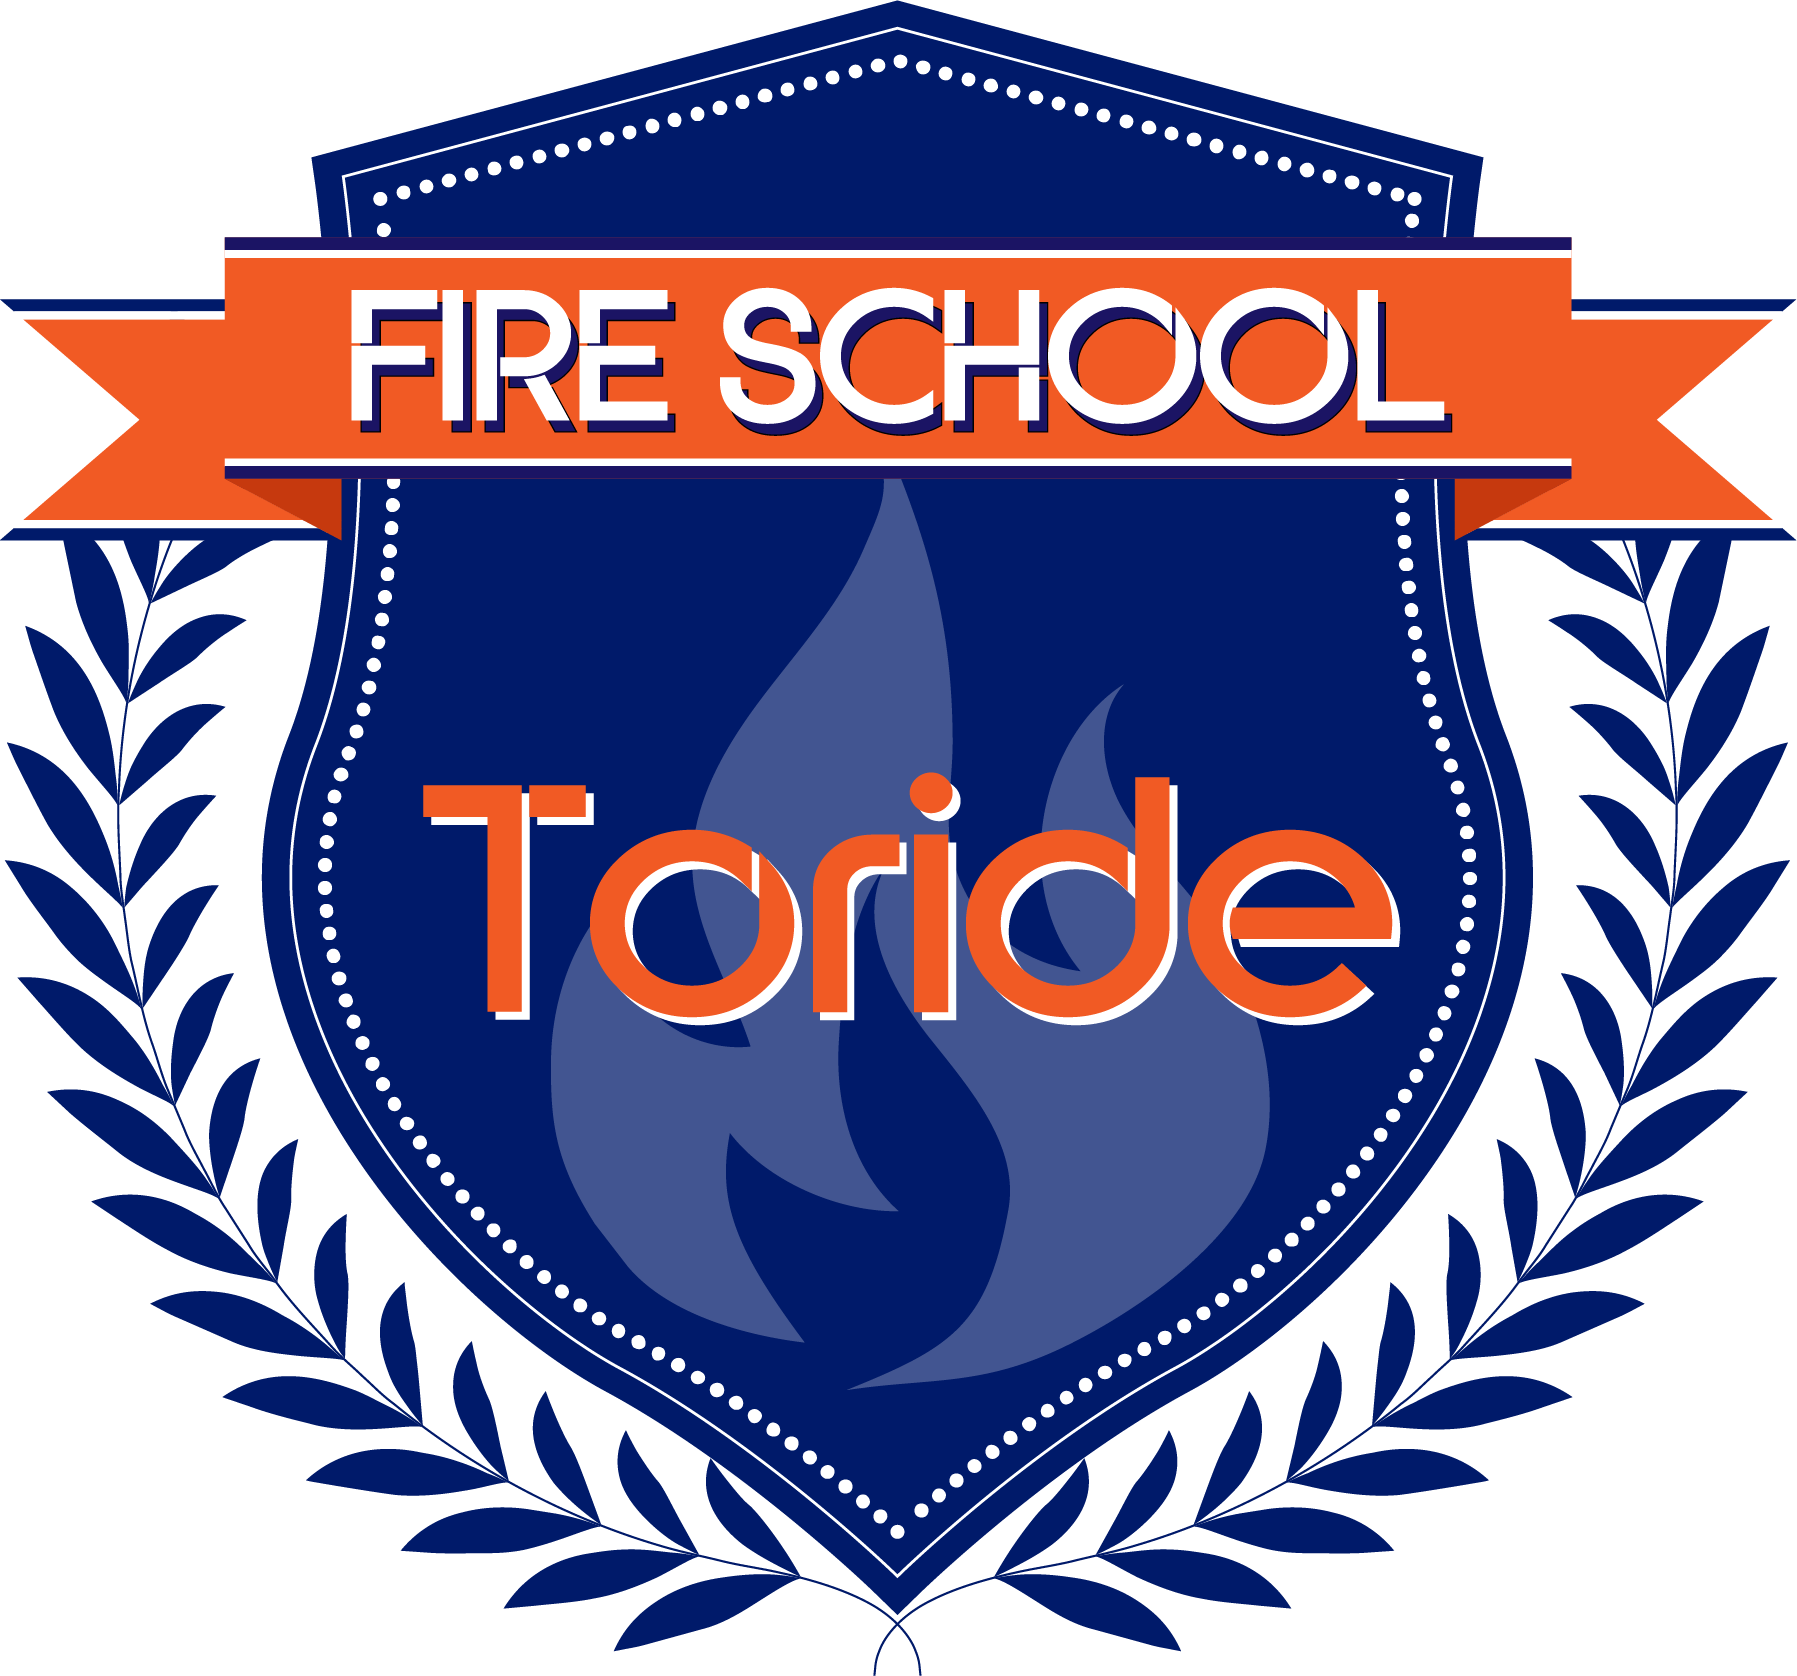 FIRE SCHOOL Tride